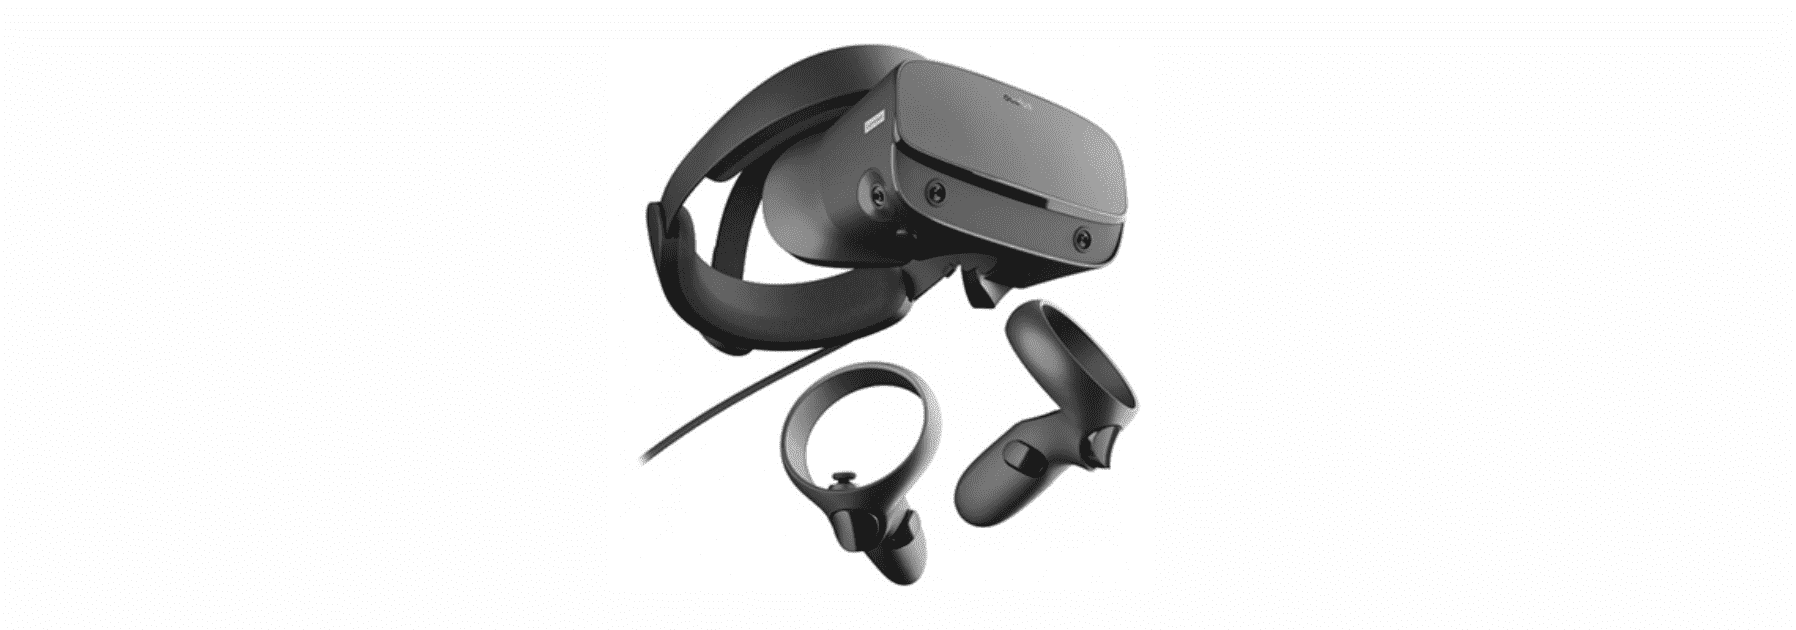 Обзор на Oculus Rift - очки виртуальной реальности